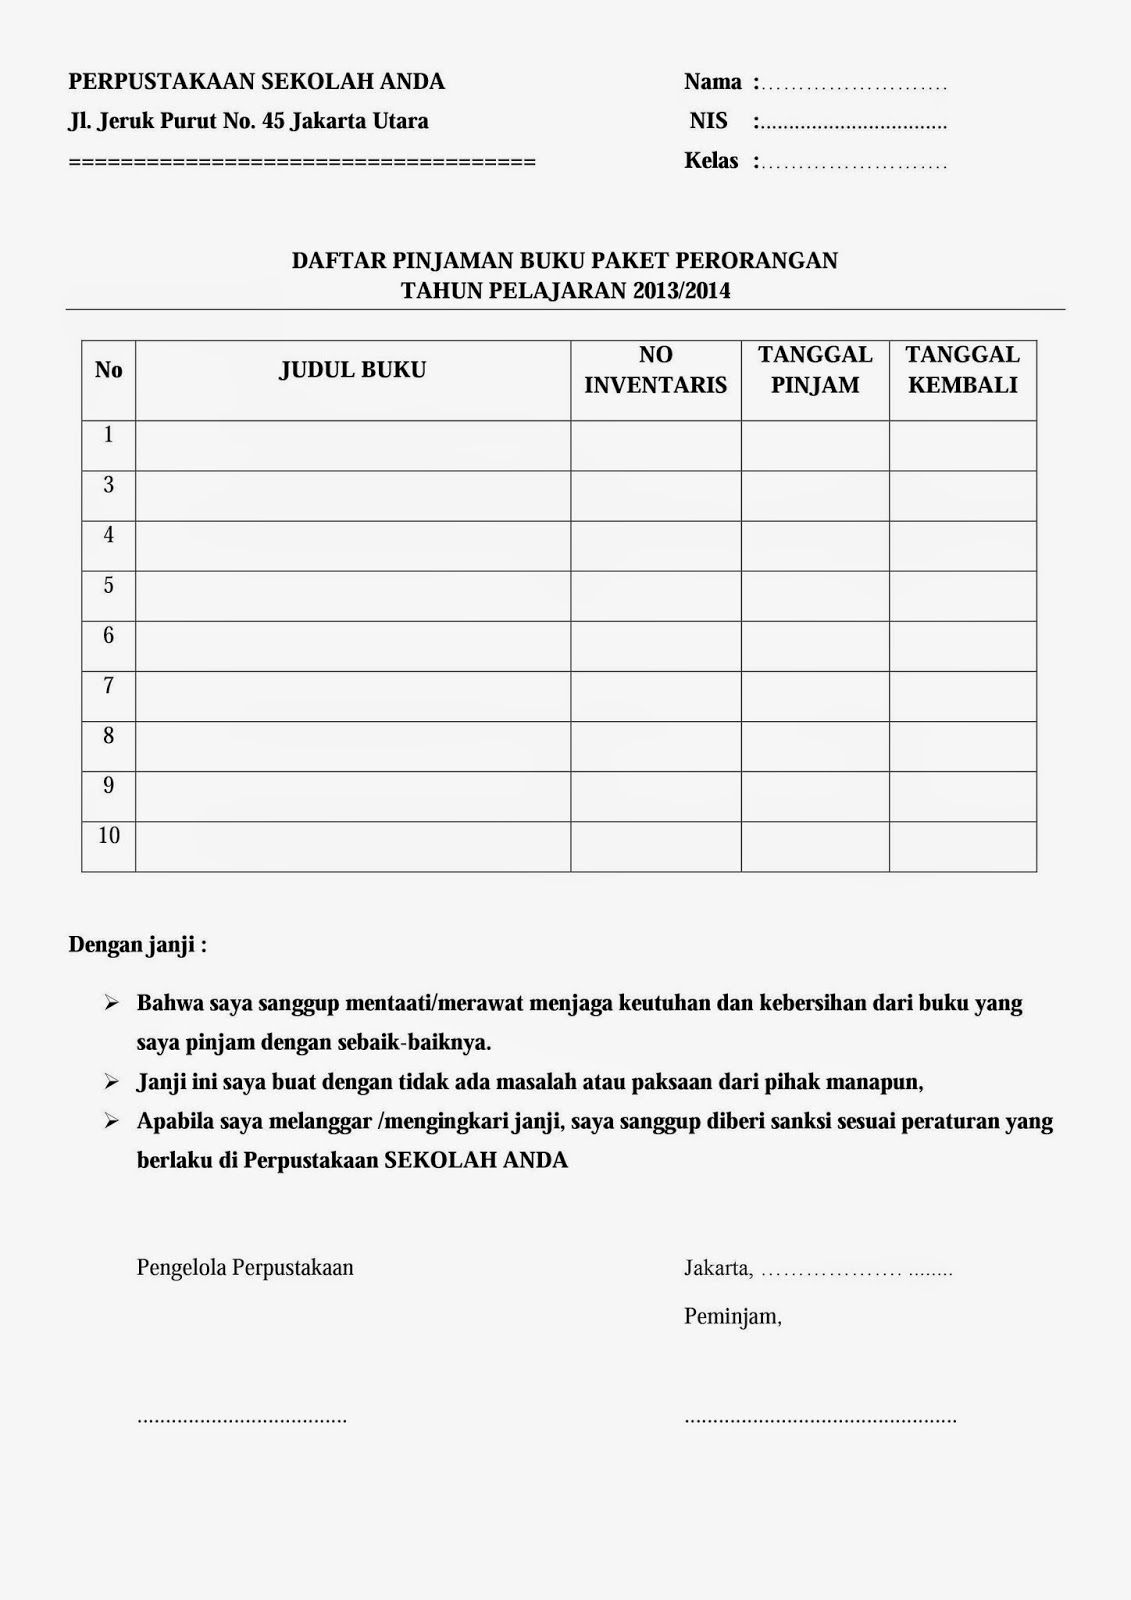 Contoh Form Peminjaman Buku Pelajaran Untuk Siswa ~ KOPI ARSIP